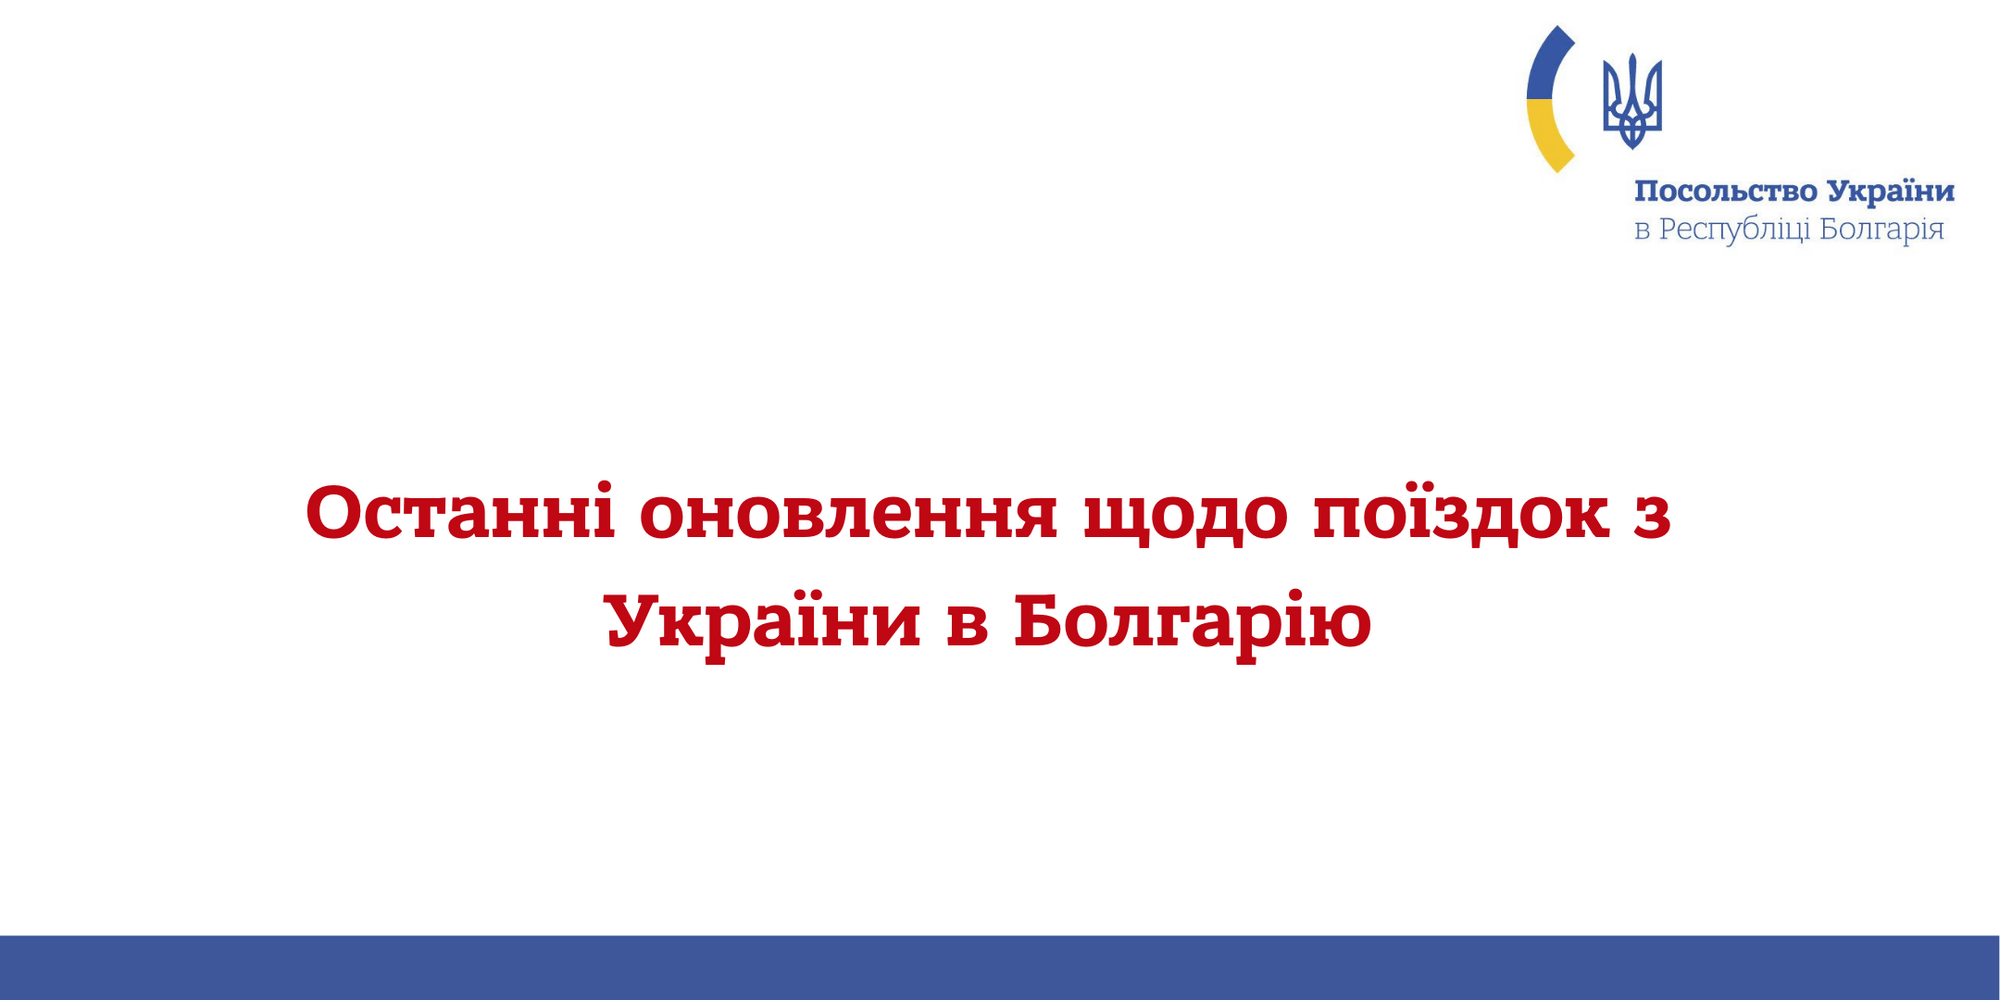 Facebook / Посольство України в Болгарії